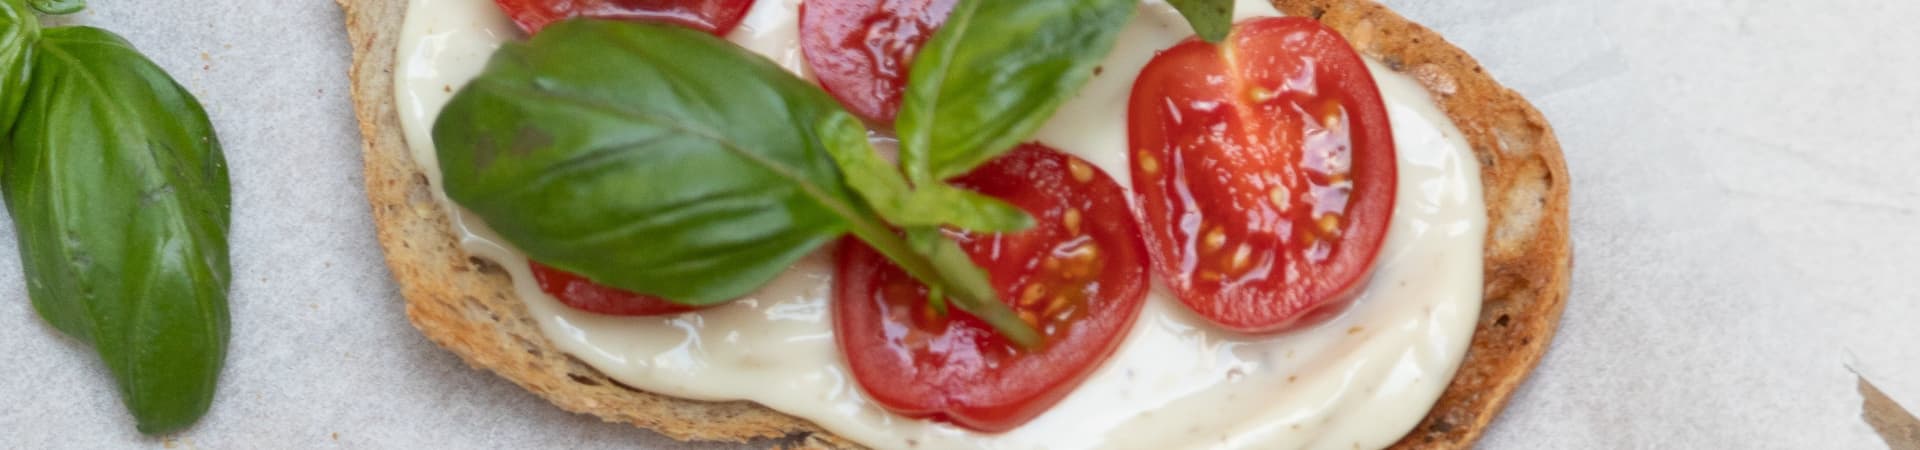 Hverdagsbruschetta med Kavli MagerOst, tomat og basilikum gir en lekker og lett lunsj.